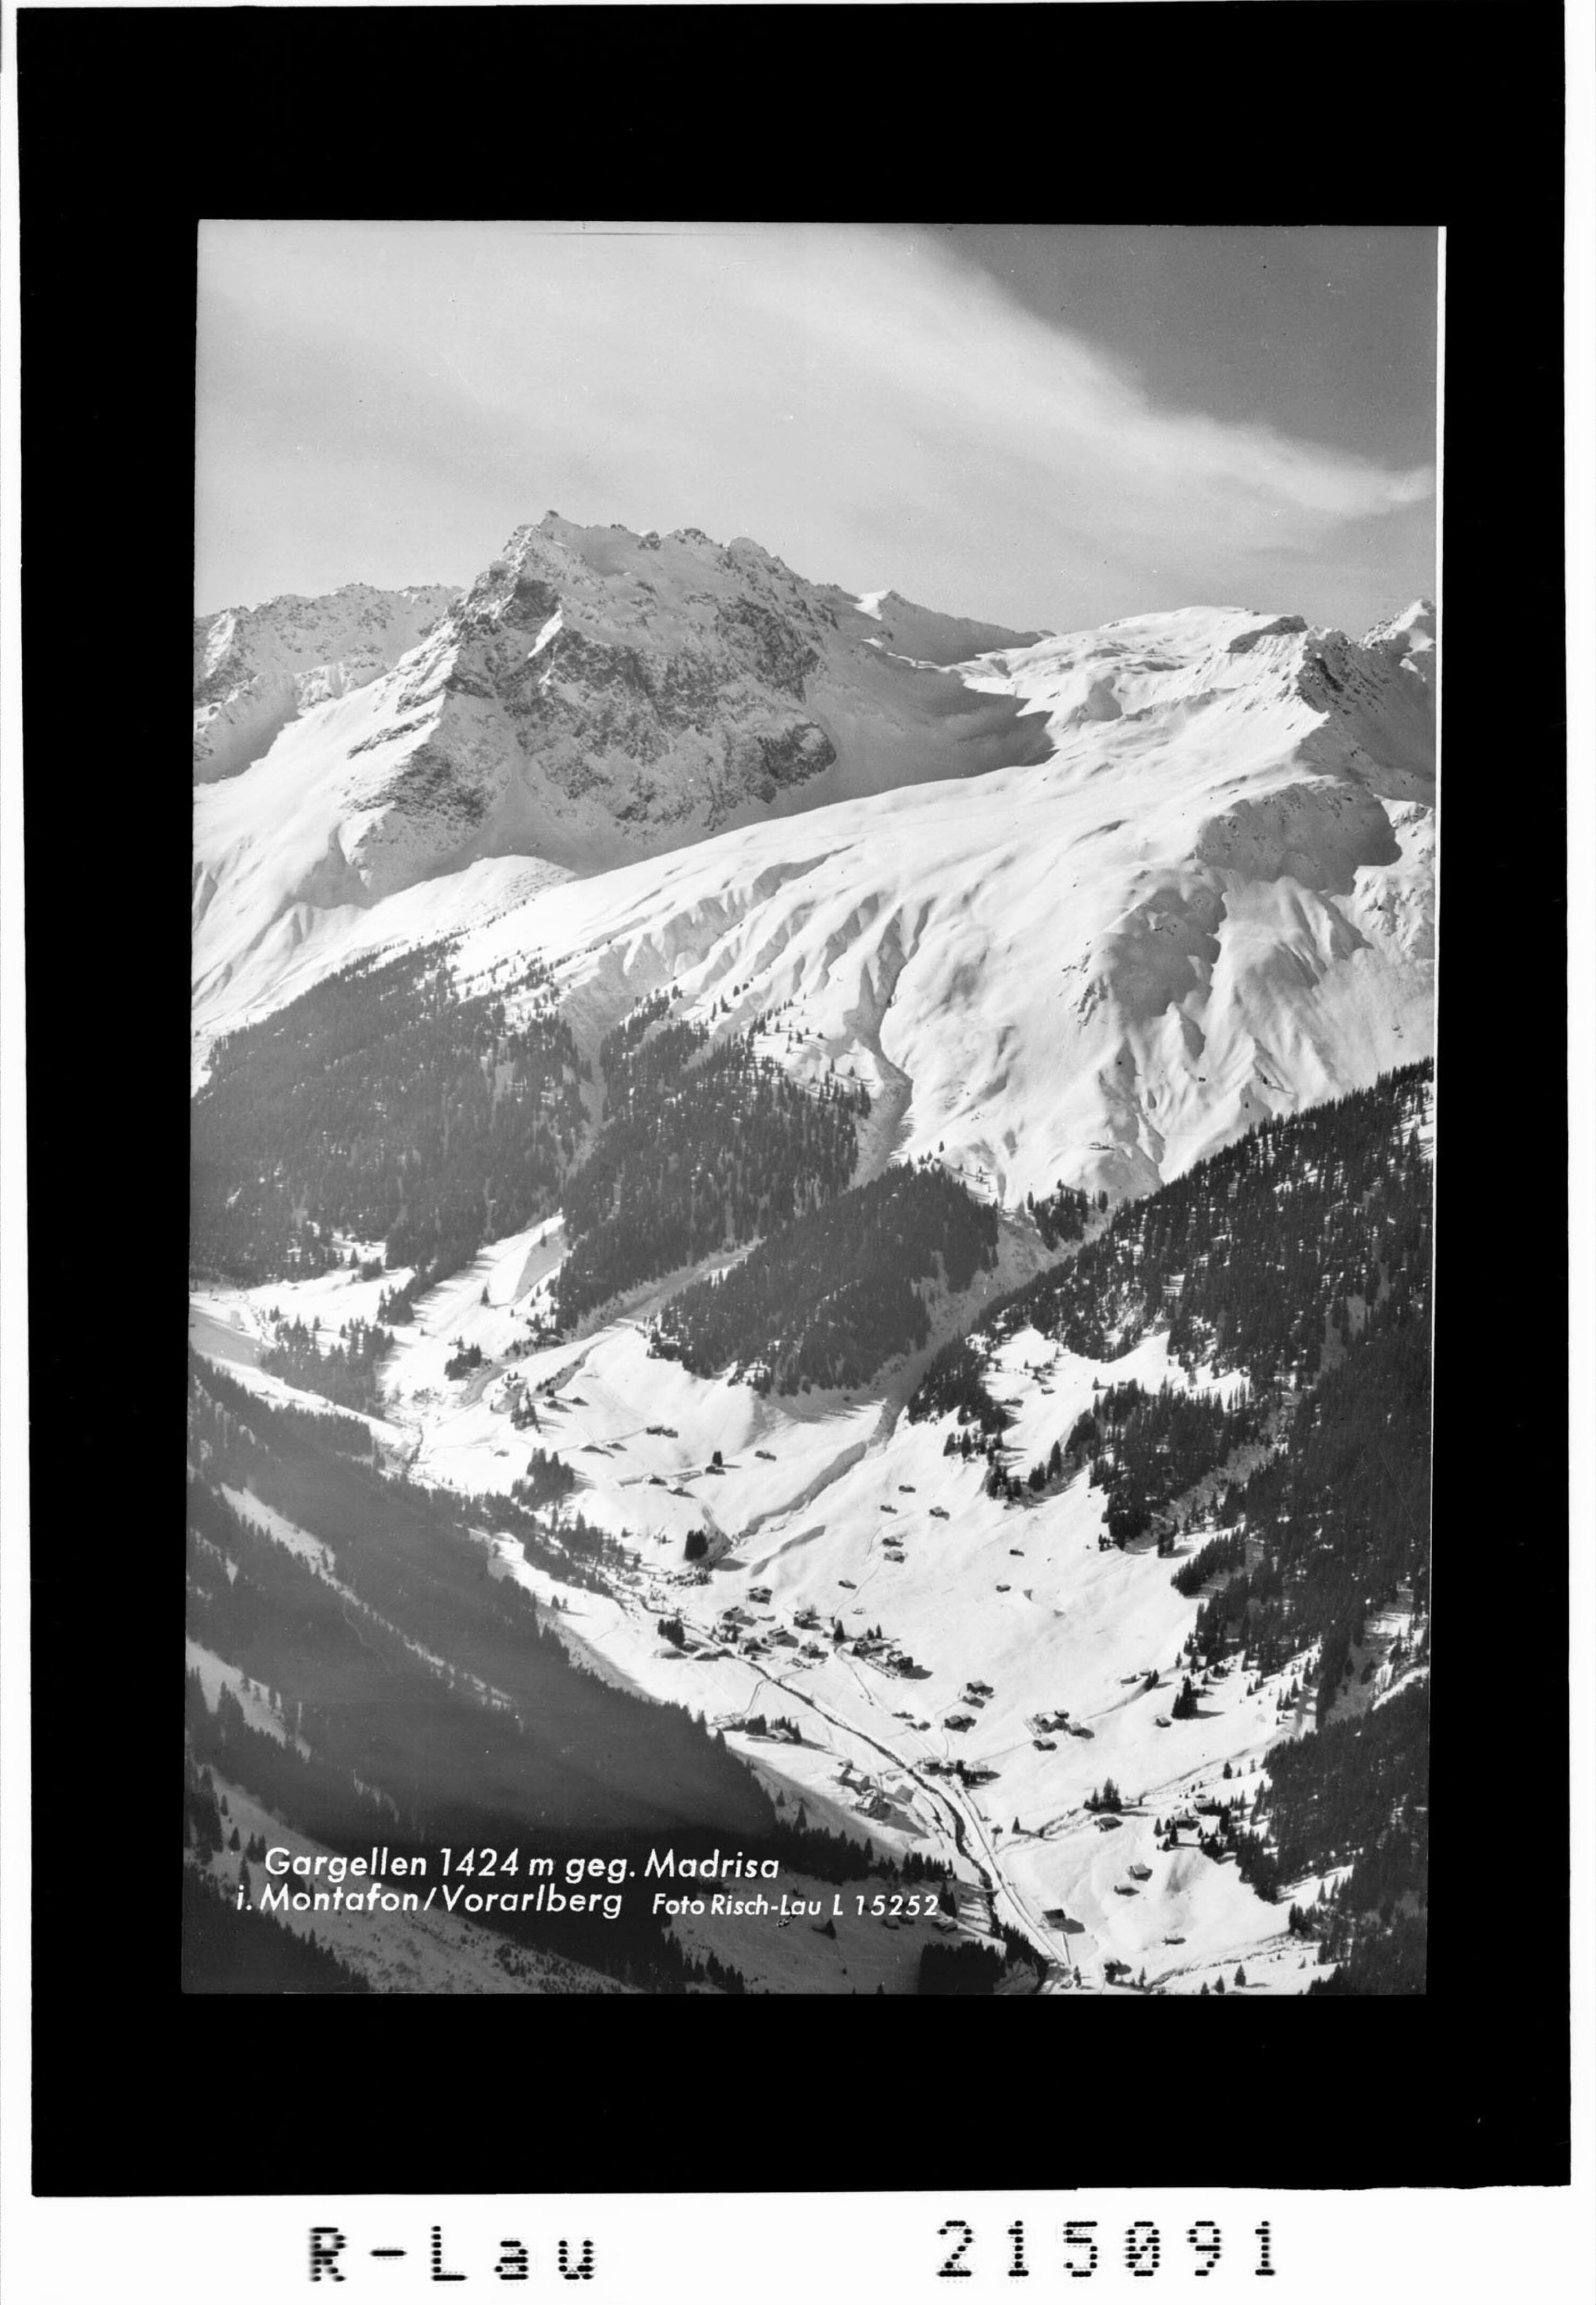 Gargellen 1424 m gegen Madrisa im Montafon / Vorarlberg></div>


    <hr>
    <div class=